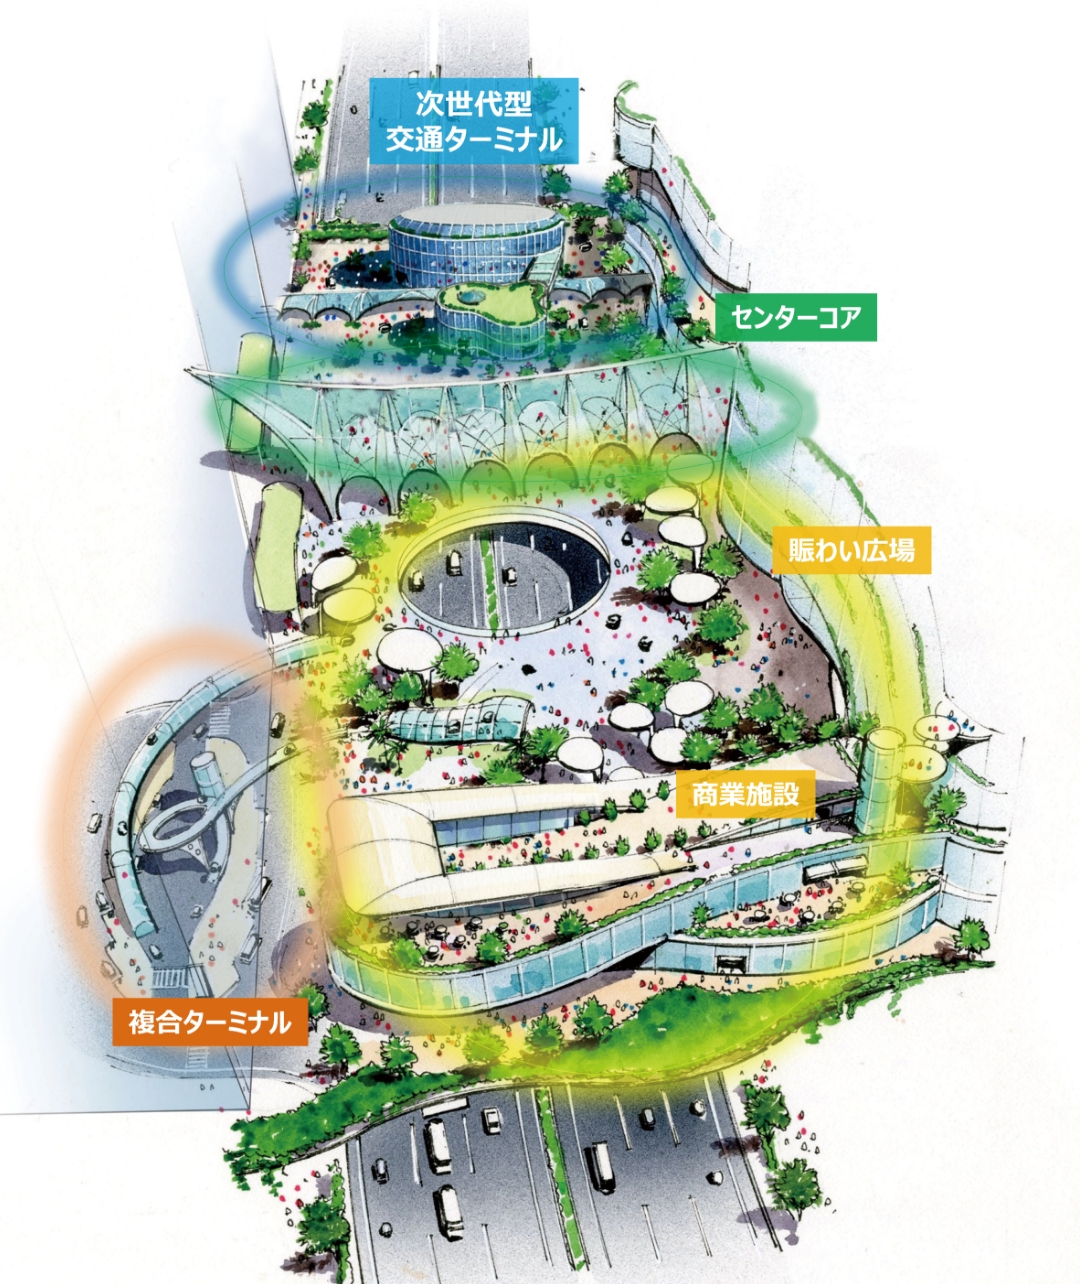 横浜側から見た品川駅西口駅前広場の機能のイメージ